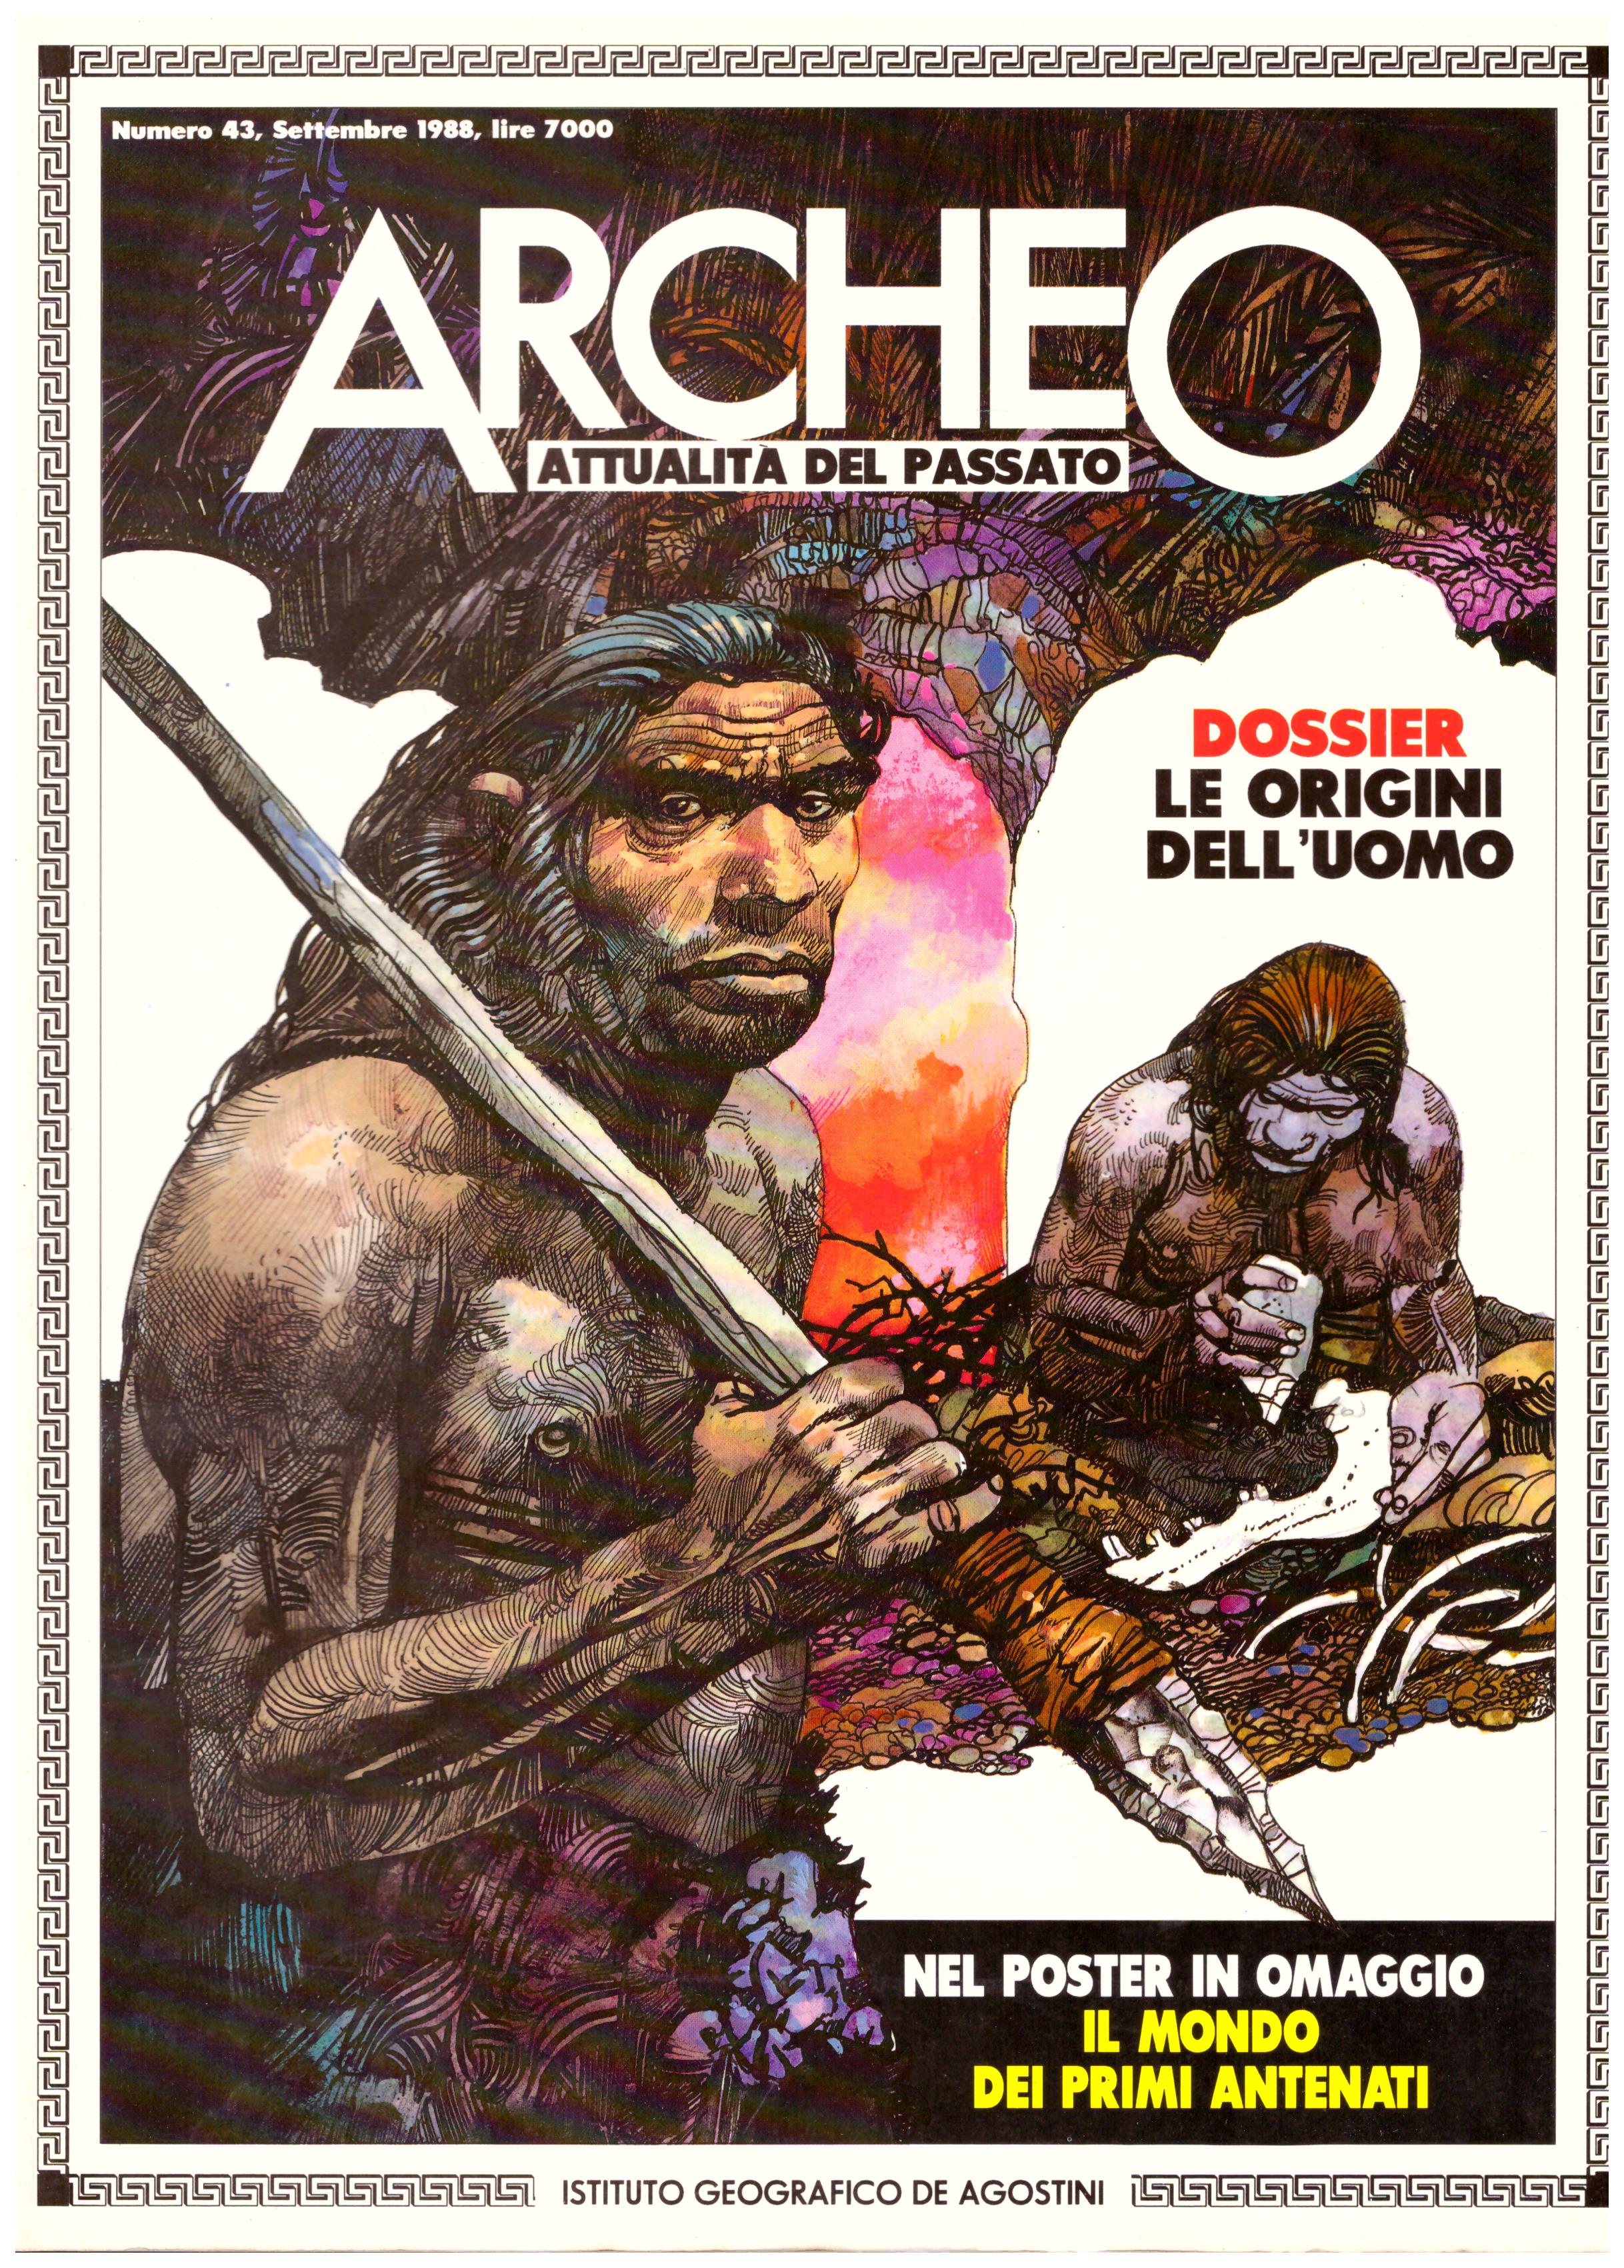 Titolo: Archeo attualità del passato, N.43, settembre 1988    Autore: AA.VV.     Editore: De Agostini Periodici.